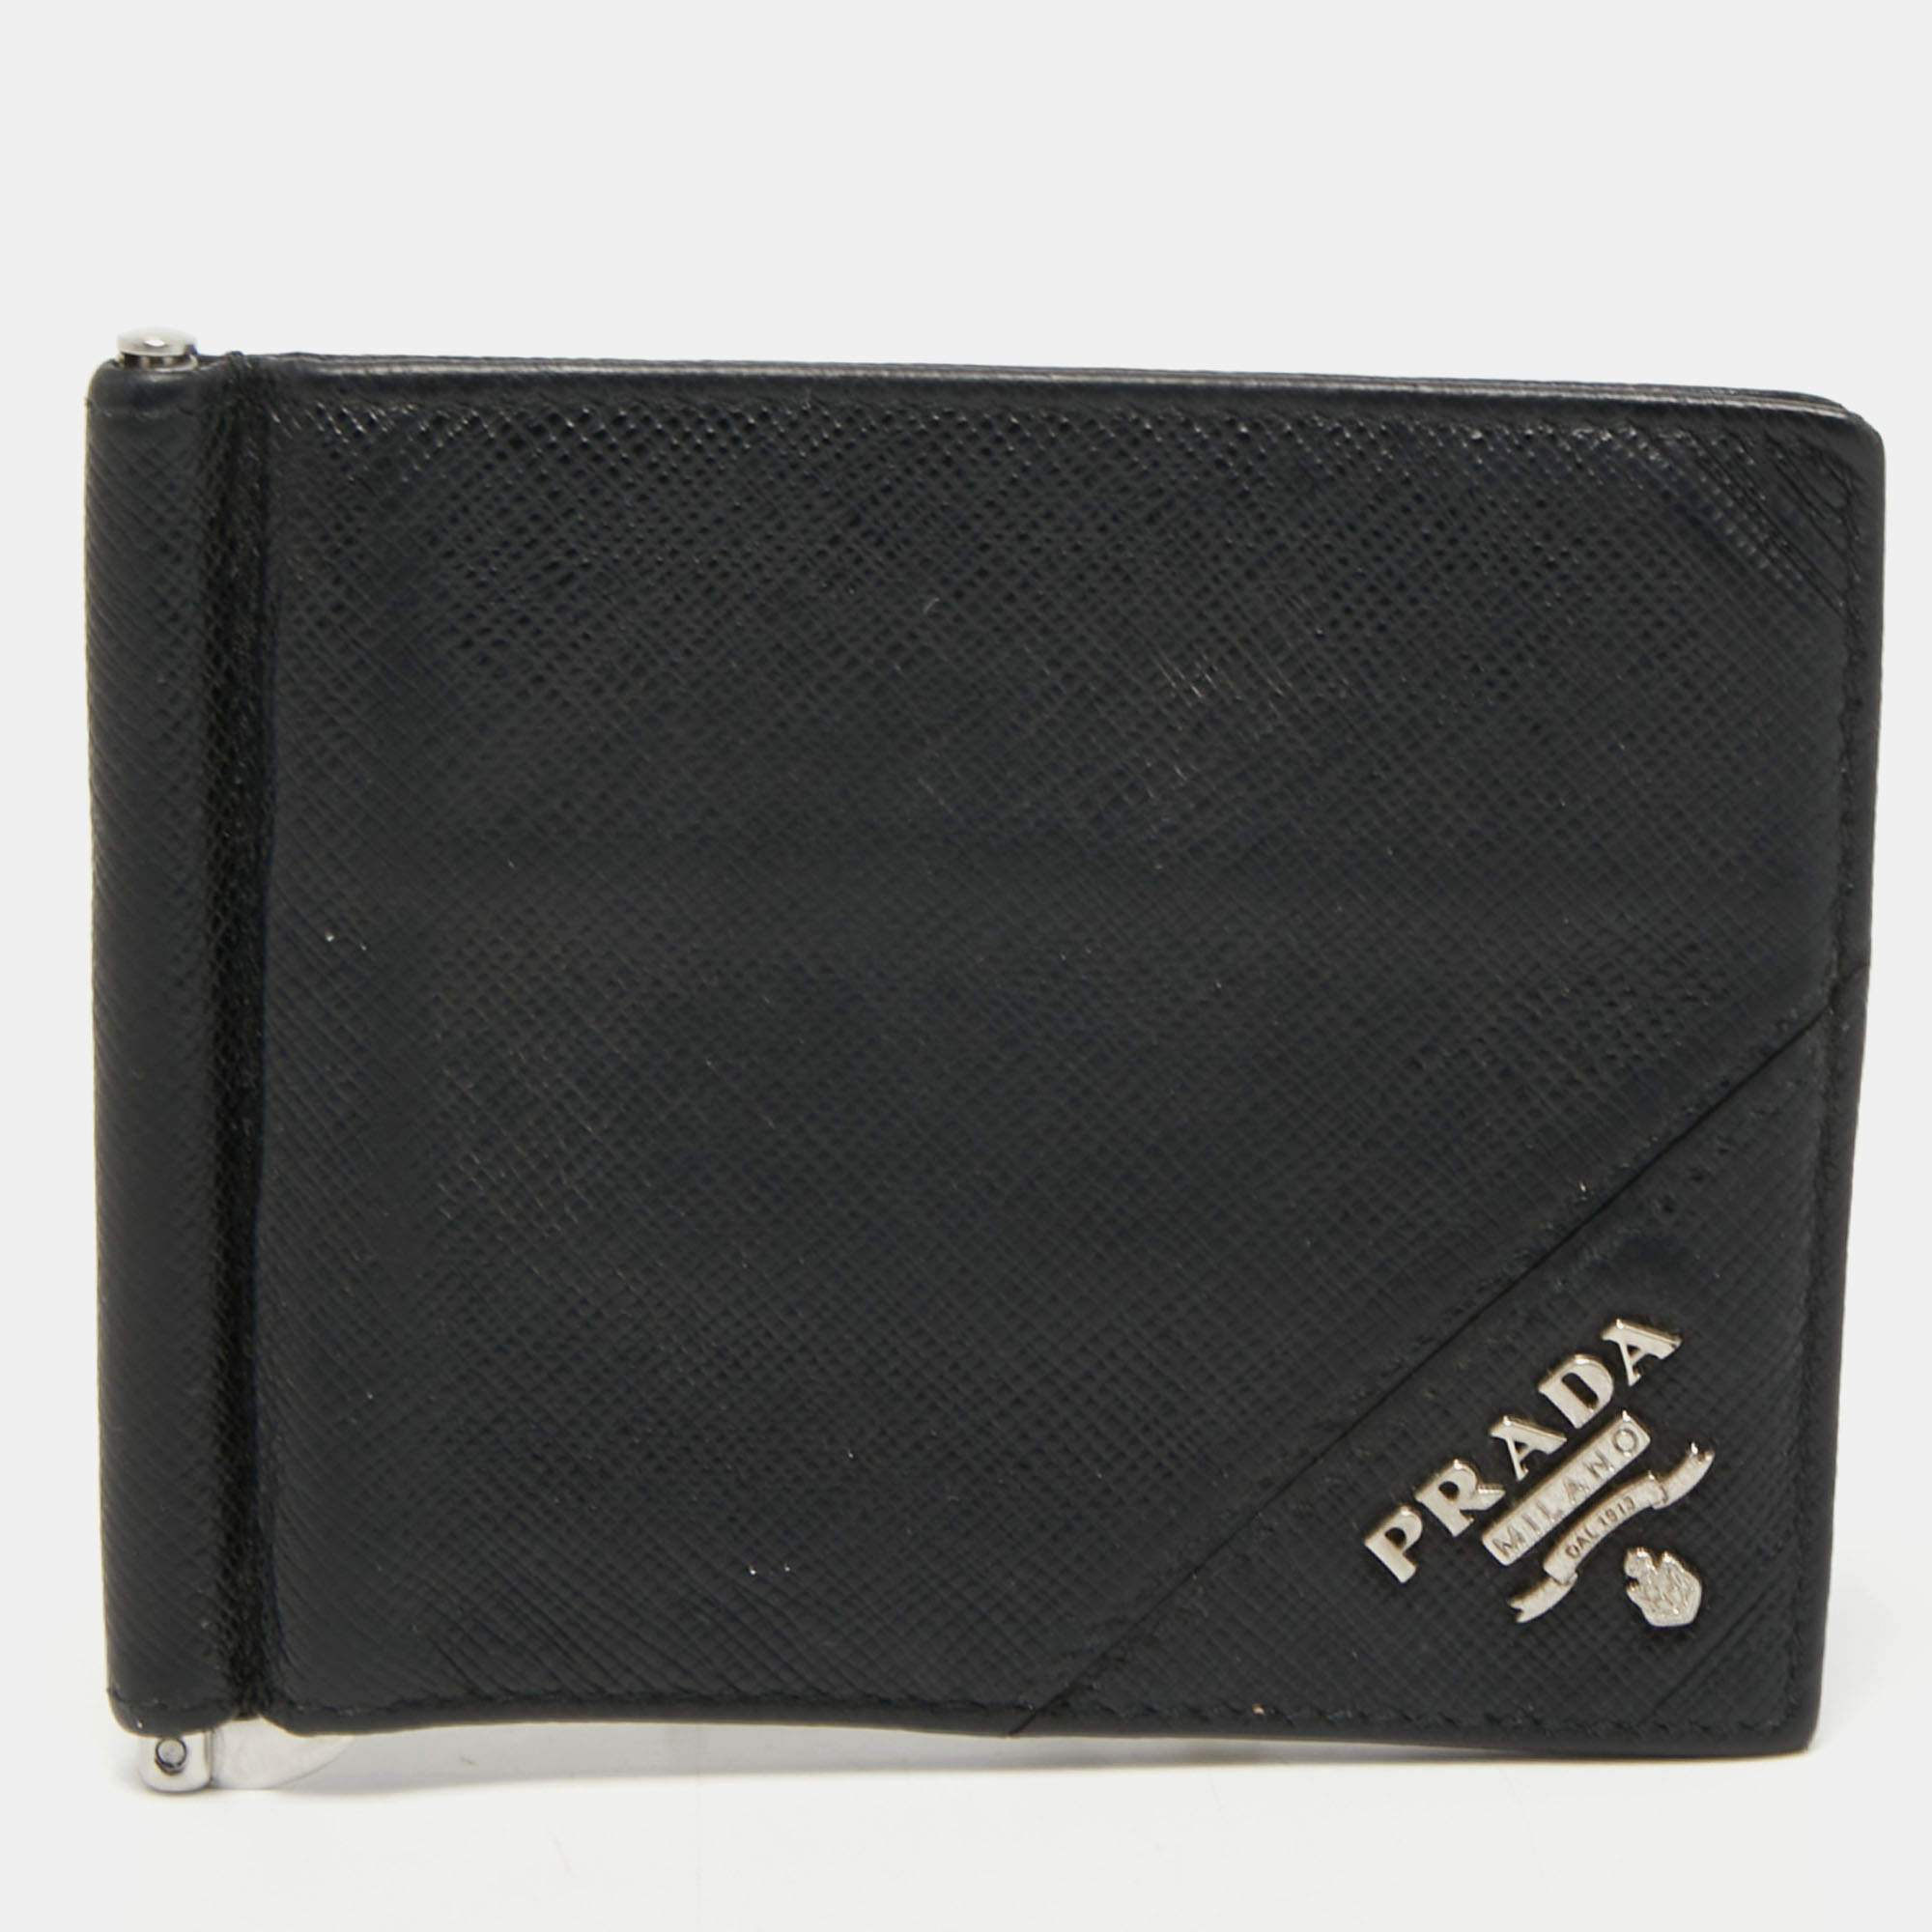 Prada outlet money clip wallet